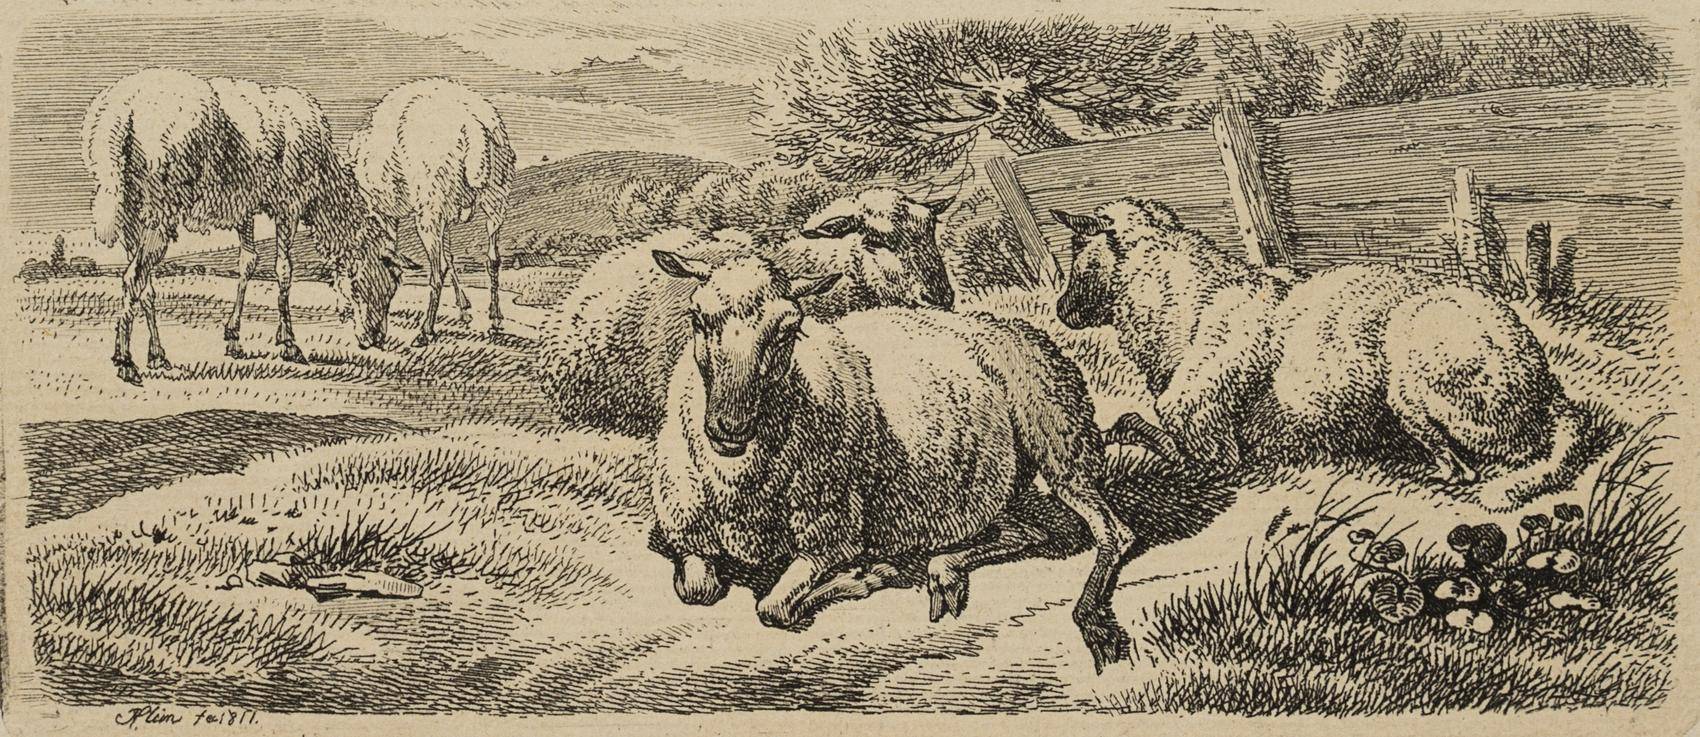 Die fünf Schafe am Plankenzaun